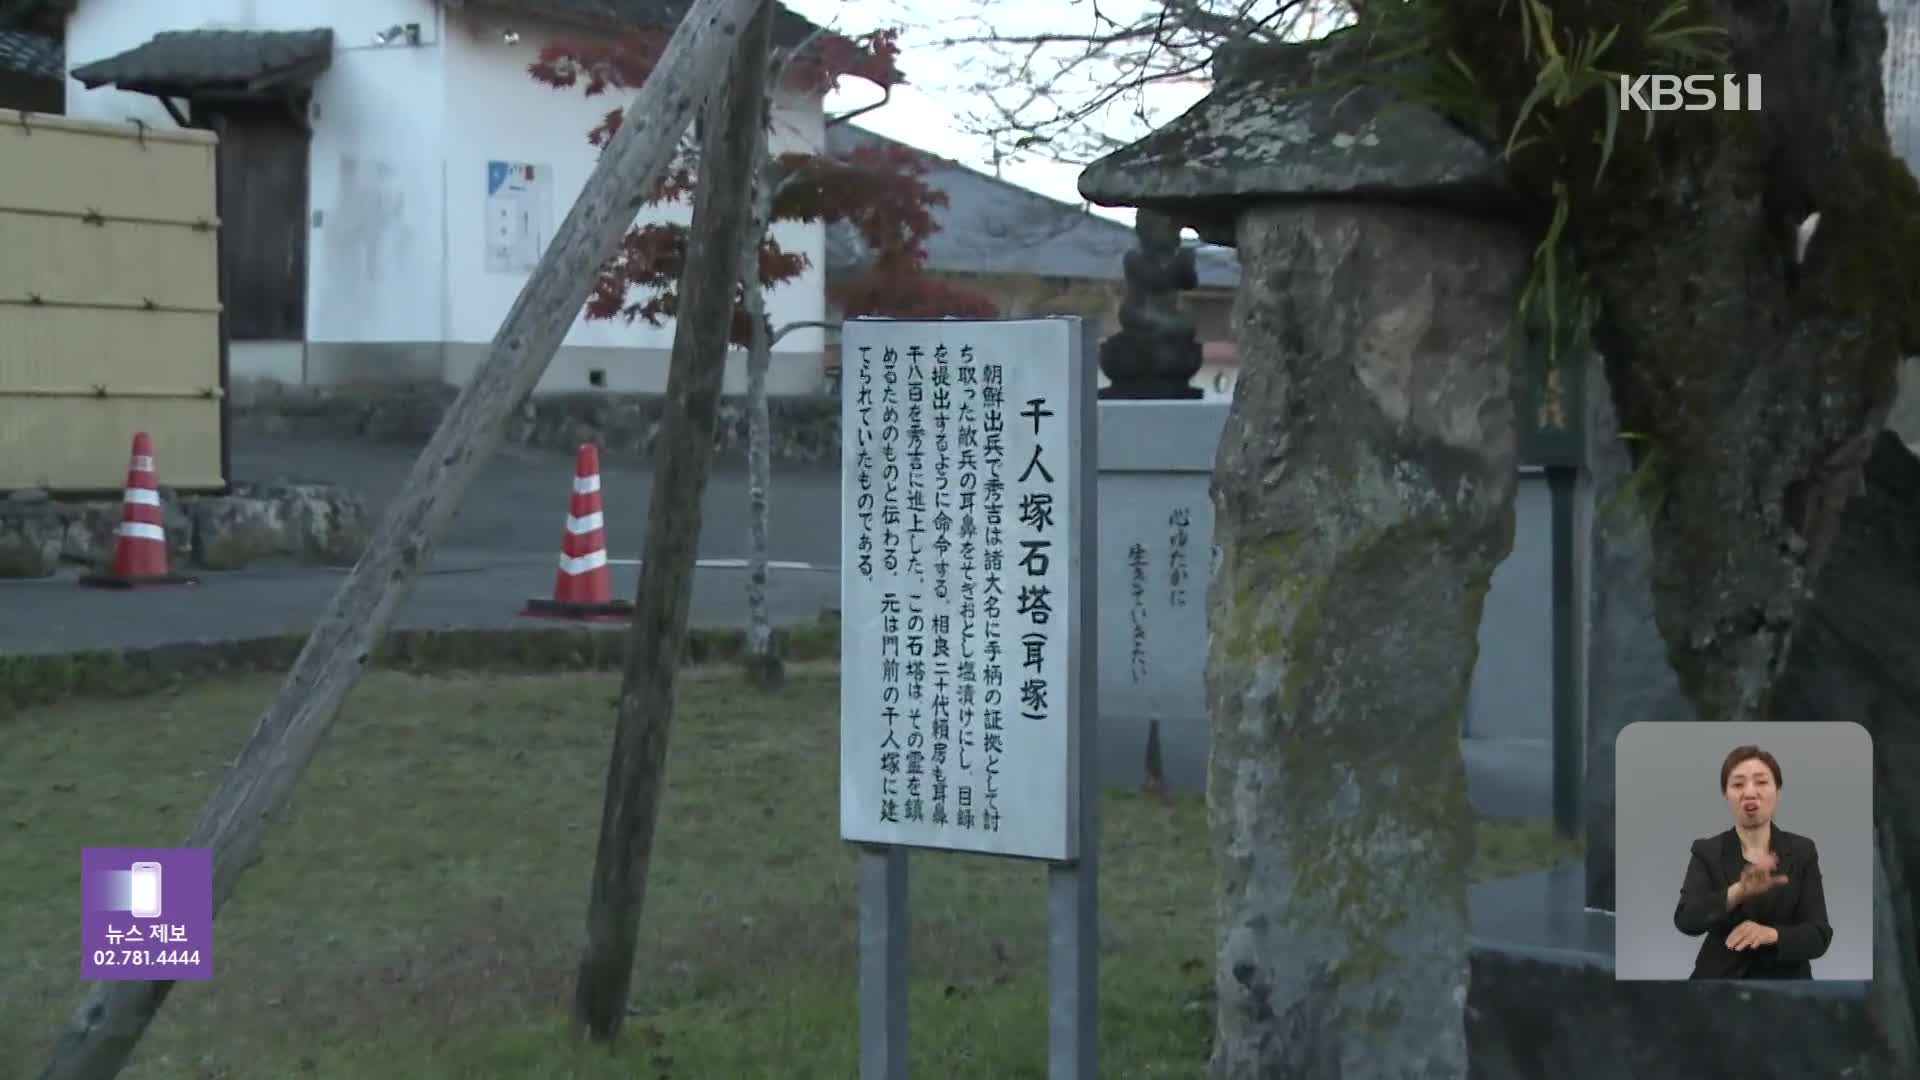 “귀·코 1,800개를 진상”…일본서 조선인 ‘귀무덤’ 추가 발견